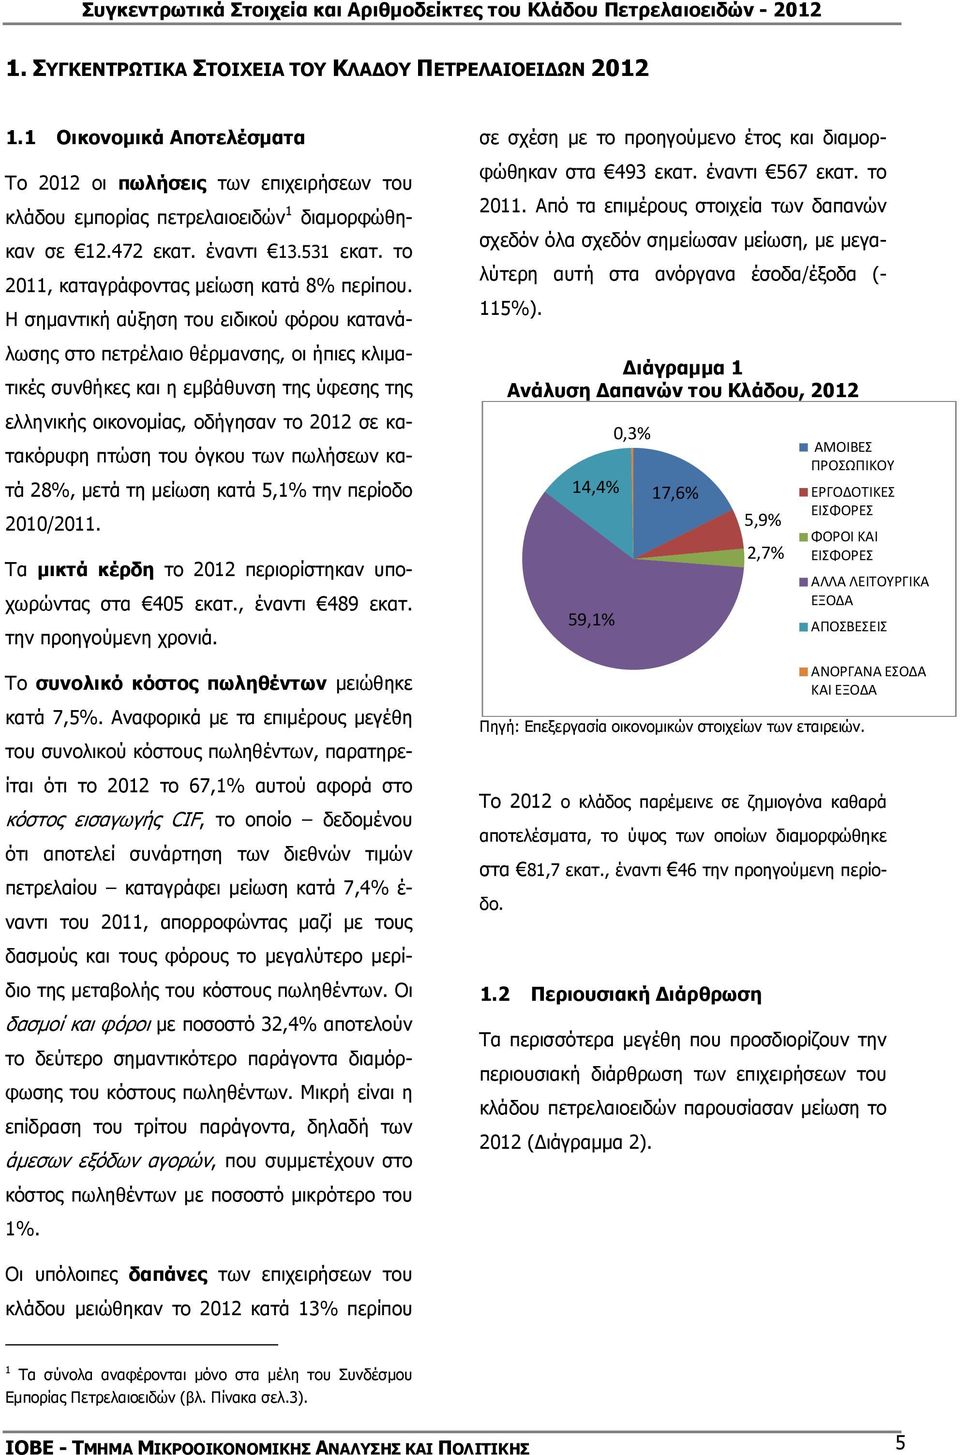 Η σηµαντική αύξηση του ειδικού φόρου κατανάλωσης στο πετρέλαιο θέρµανσης, οι ήπιες κλιµατικές συνθήκες και η εµβάθυνση της ύφεσης της ελληνικής οικονοµίας, οδήγησαν το 2012 σε κατακόρυφη πτώση του